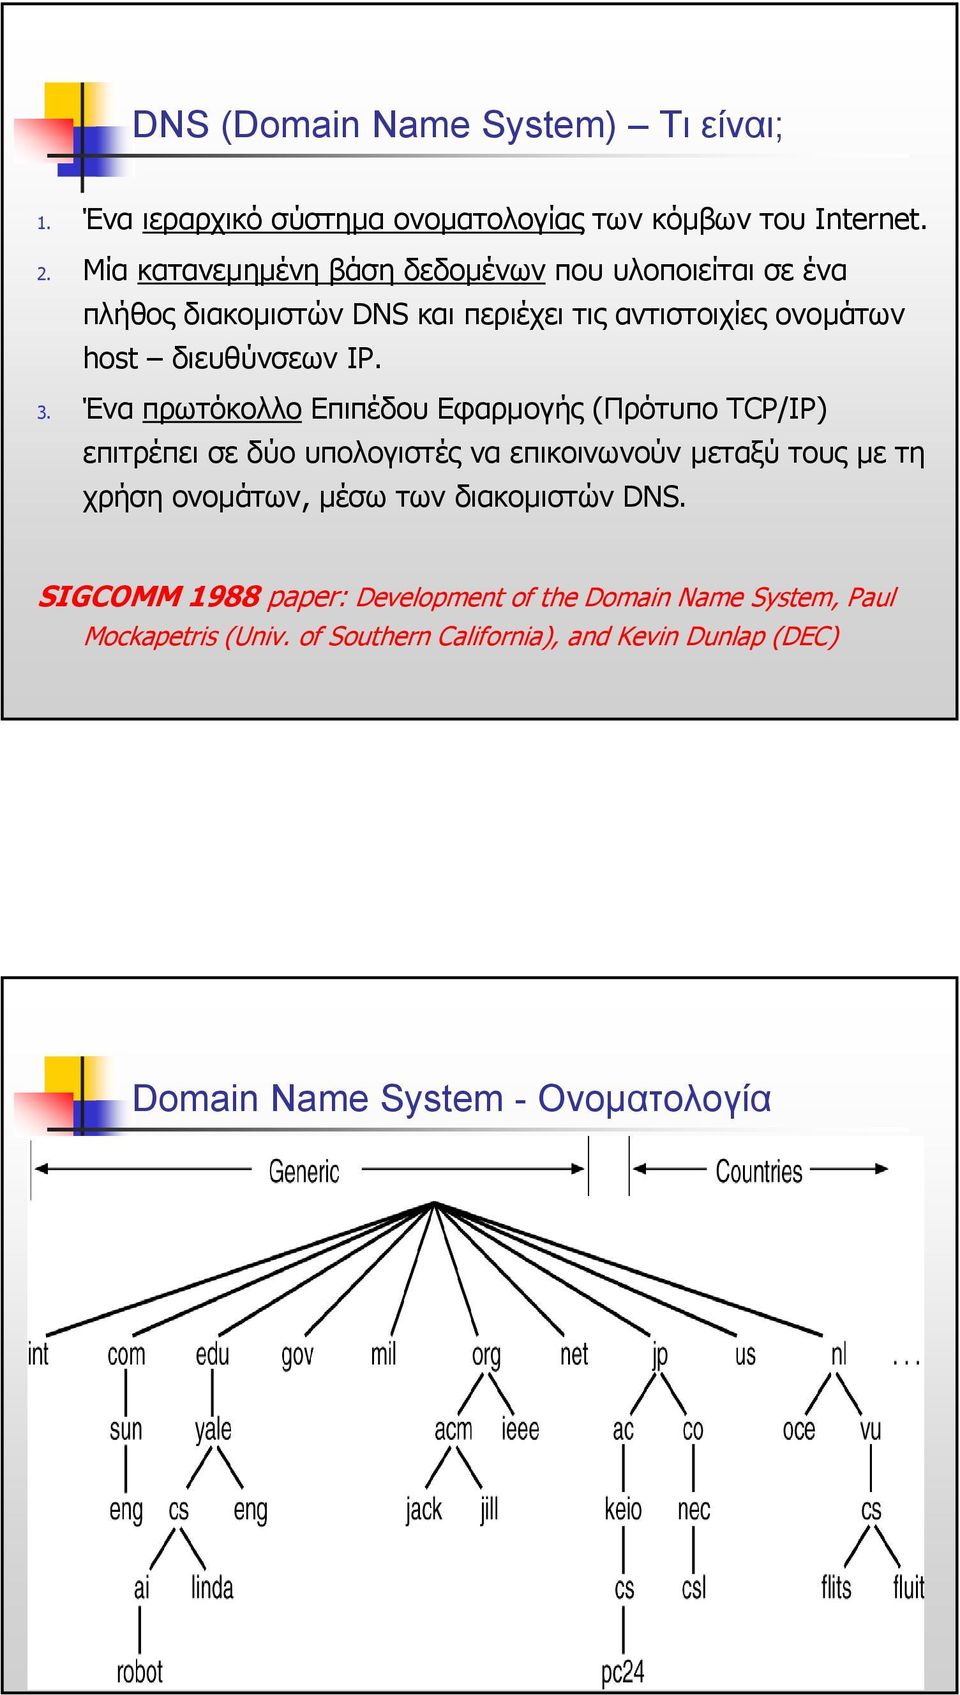 Ένα πρωτόκολλο Επιπέδου Εφαρµογής (Πρότυπο TCP/IP) επιτρέπει σε δύο υπολογιστές να επικοινωνούν µεταξύ τους µετη χρήση ονοµάτων, µέσω των